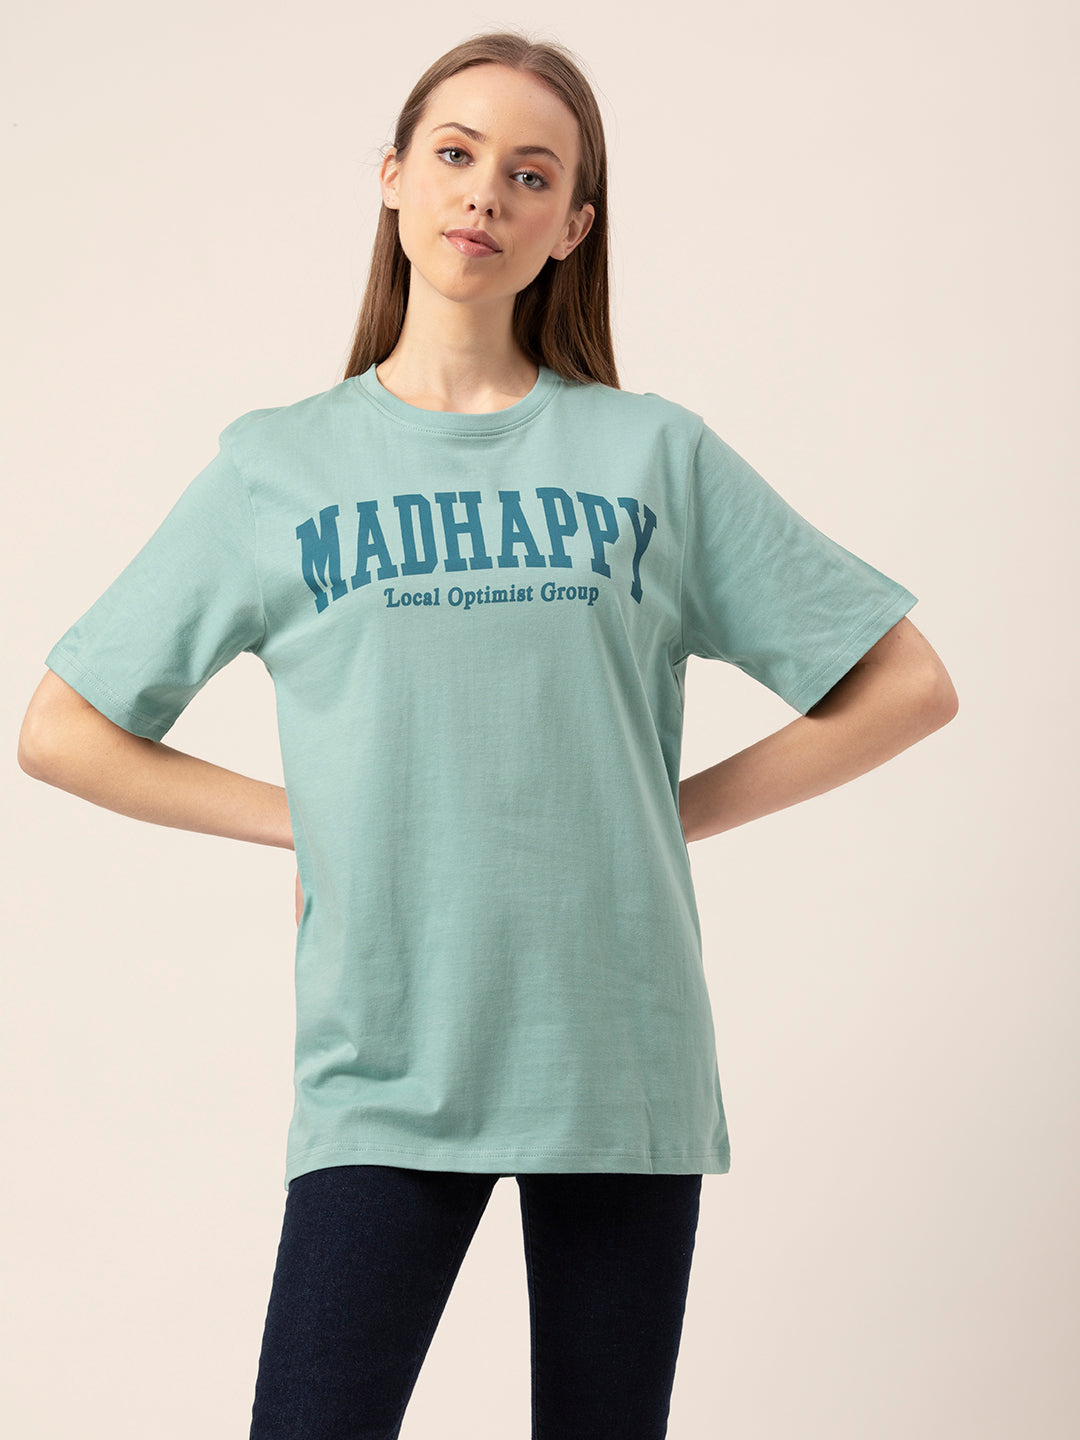 Madhappy Women's Oversized T-Shirt